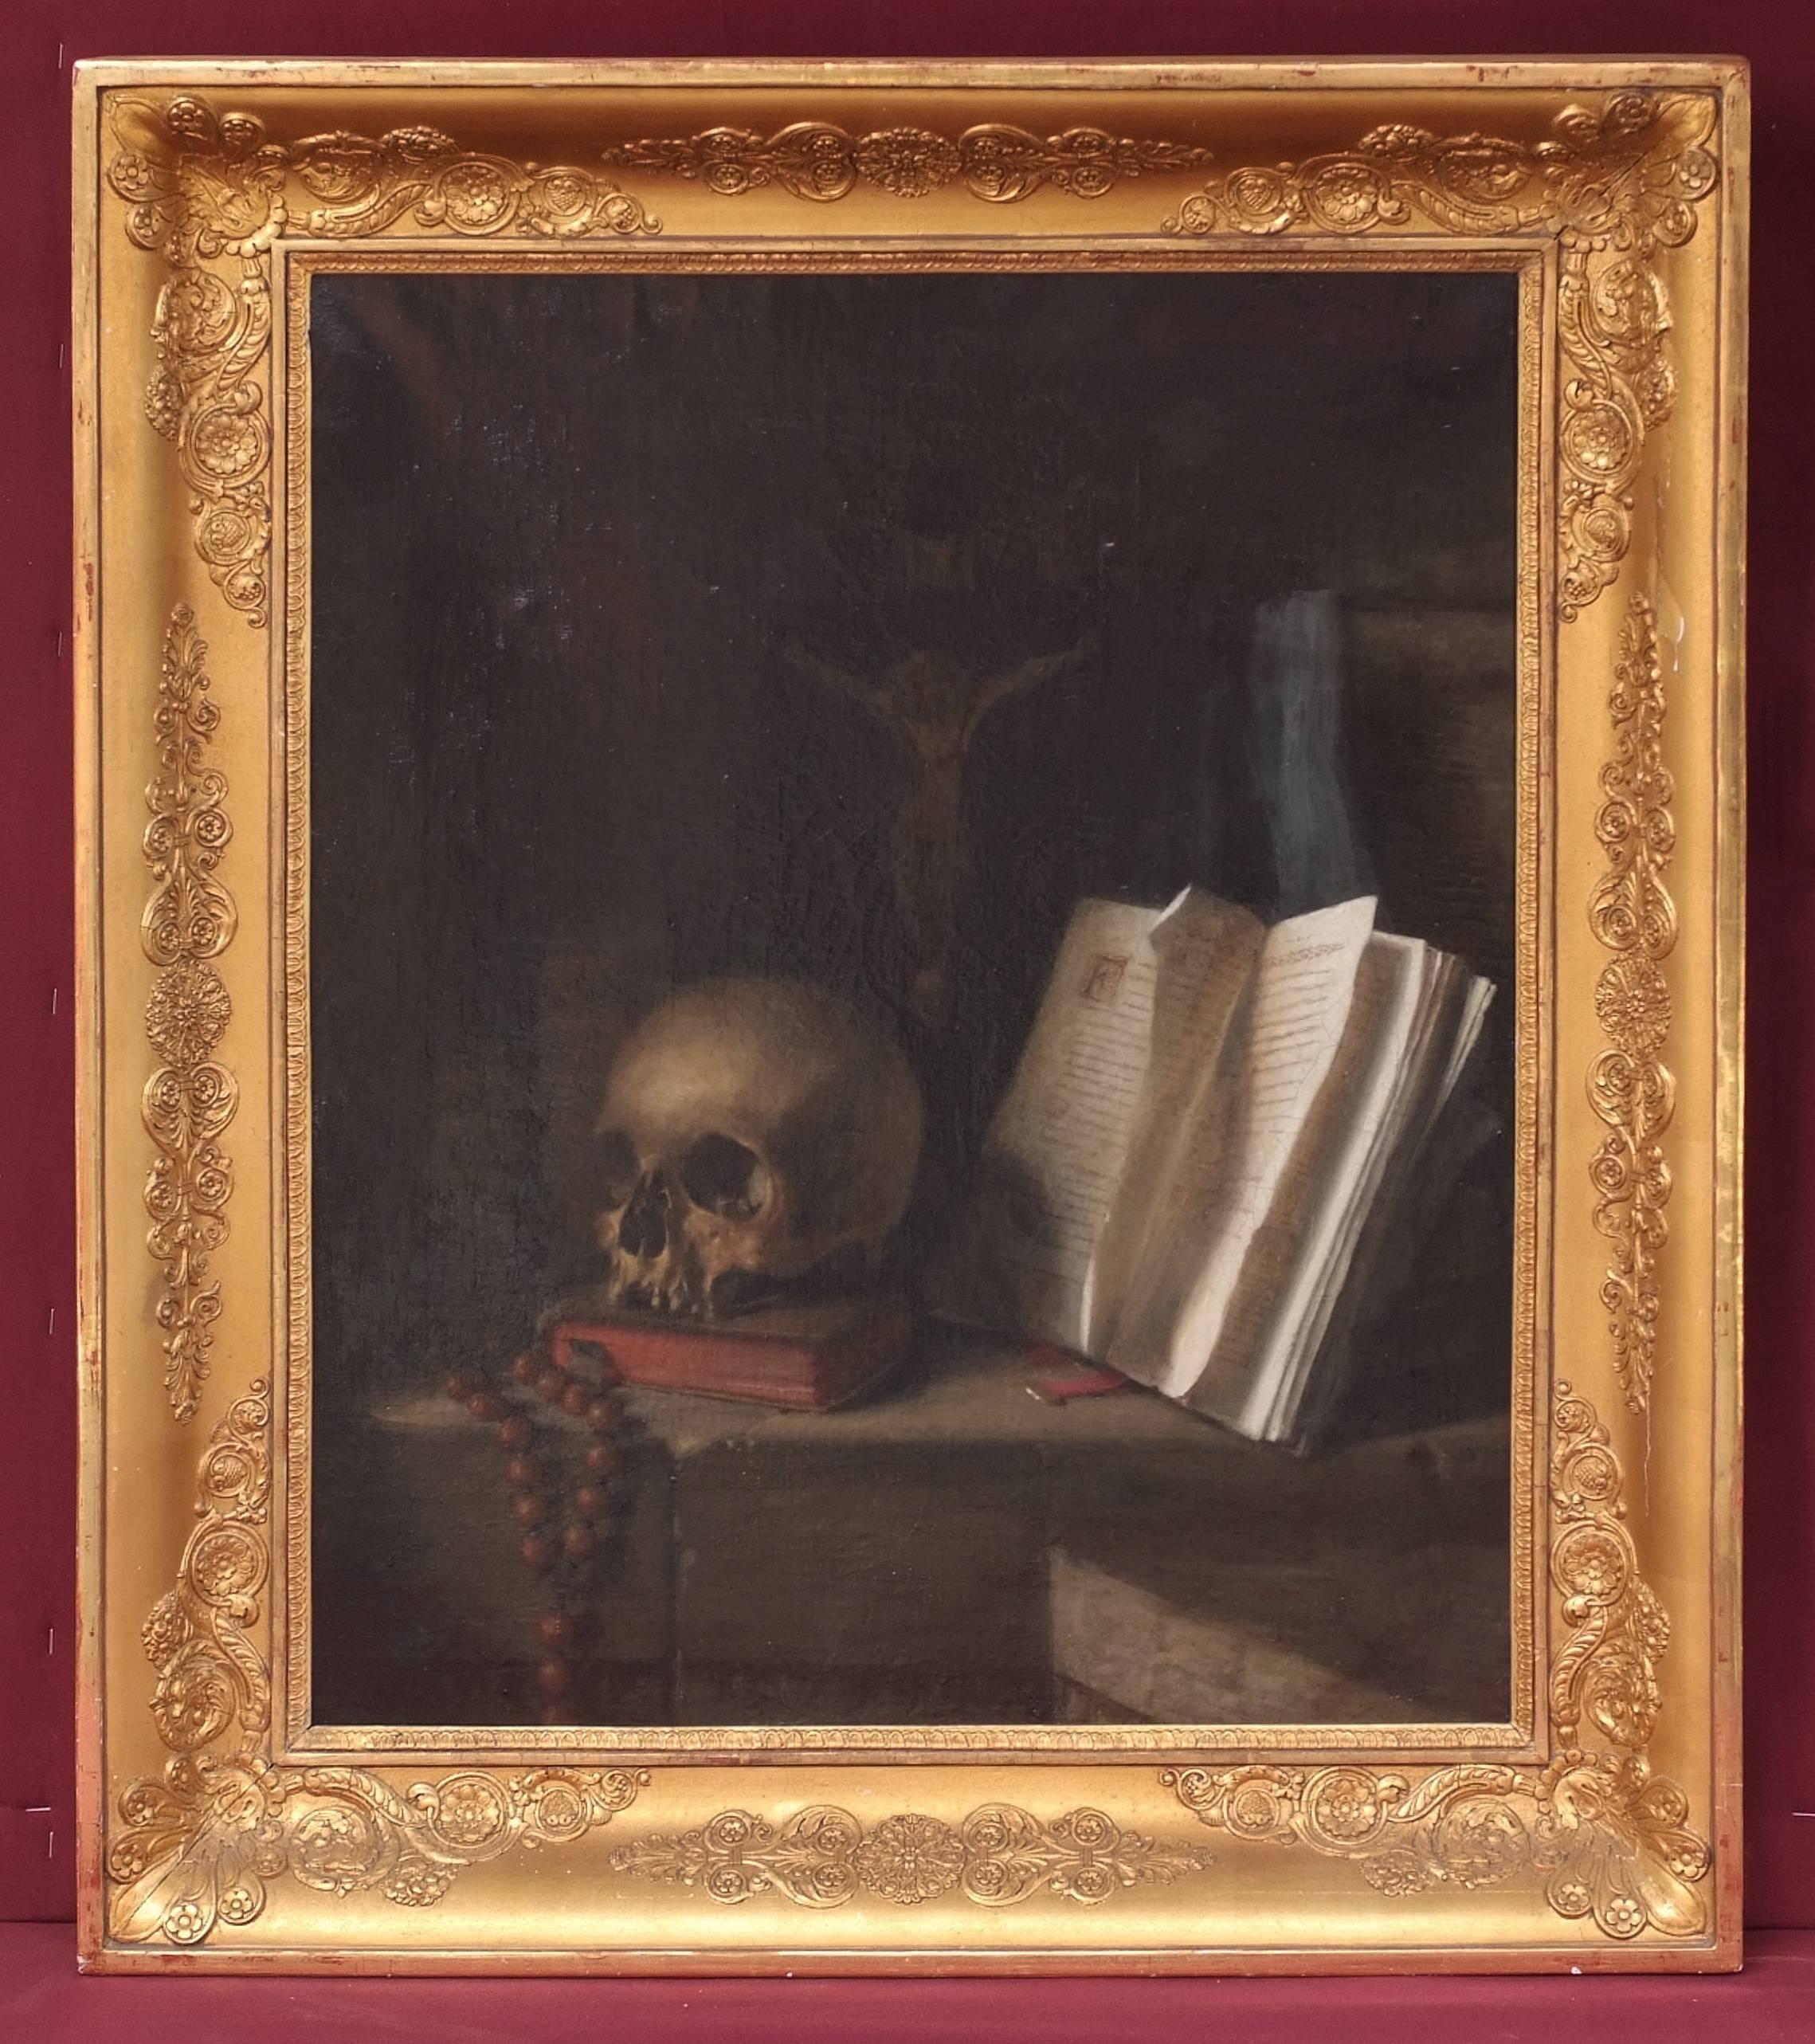 Painting 18th Century Vanitas Still Life Skull Religion Esotericism Occult 